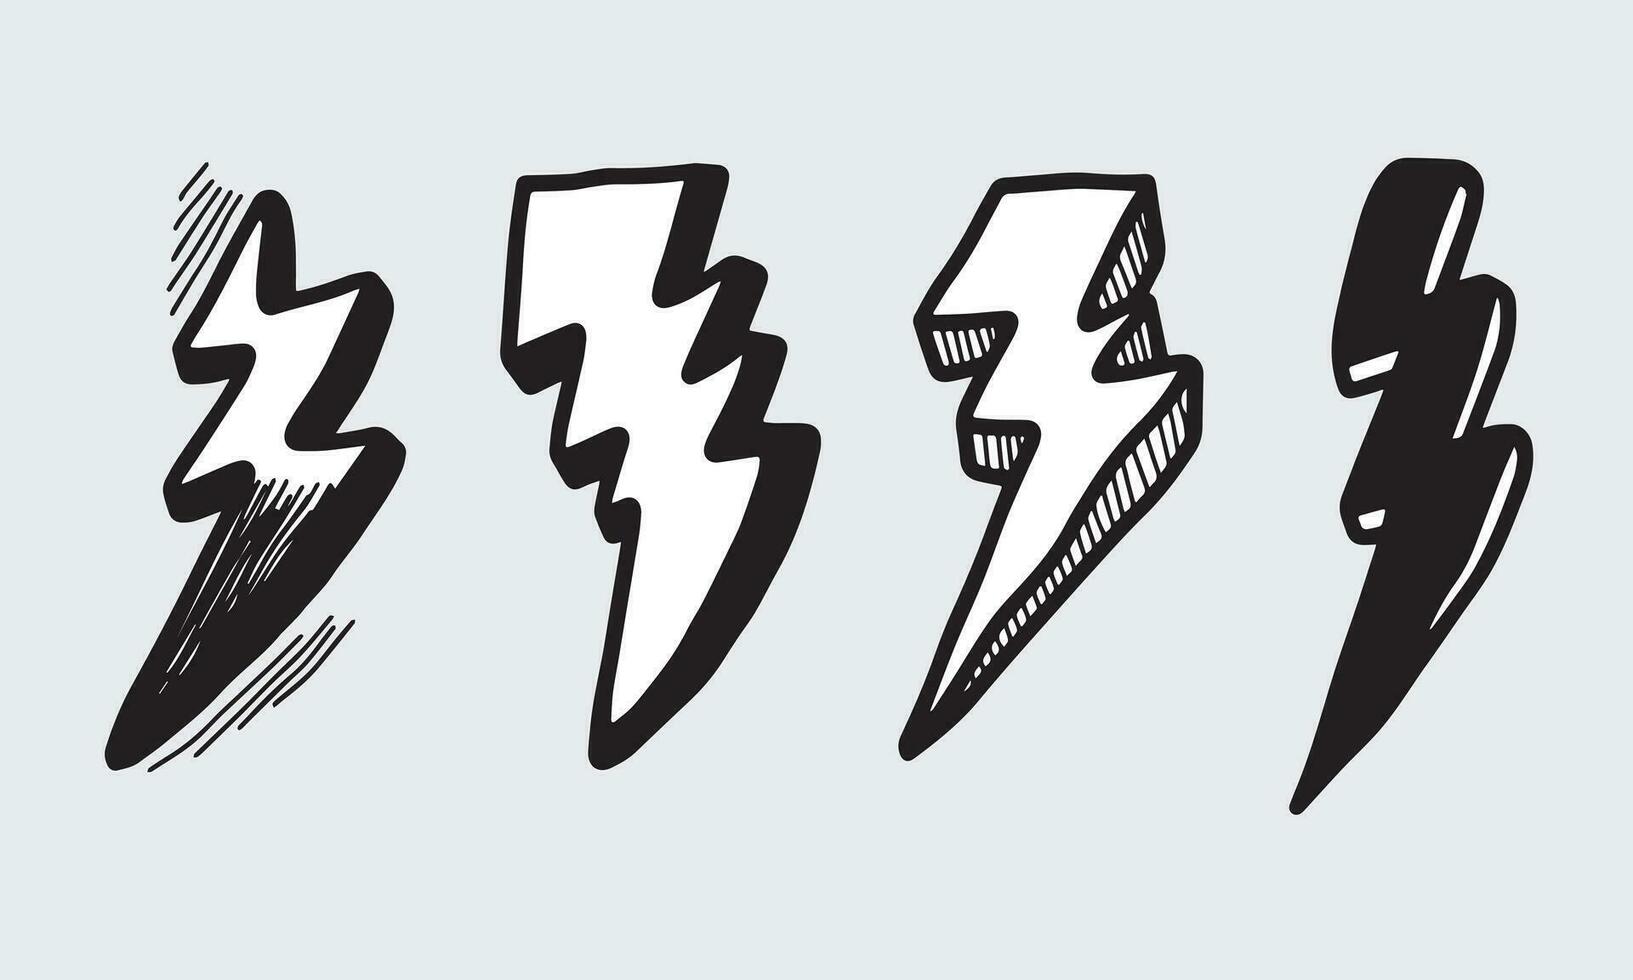 set di illustrazioni di schizzo di simbolo di fulmine elettrico doodle vettoriale disegnato a mano. icona di doodle di simbolo di tuono.